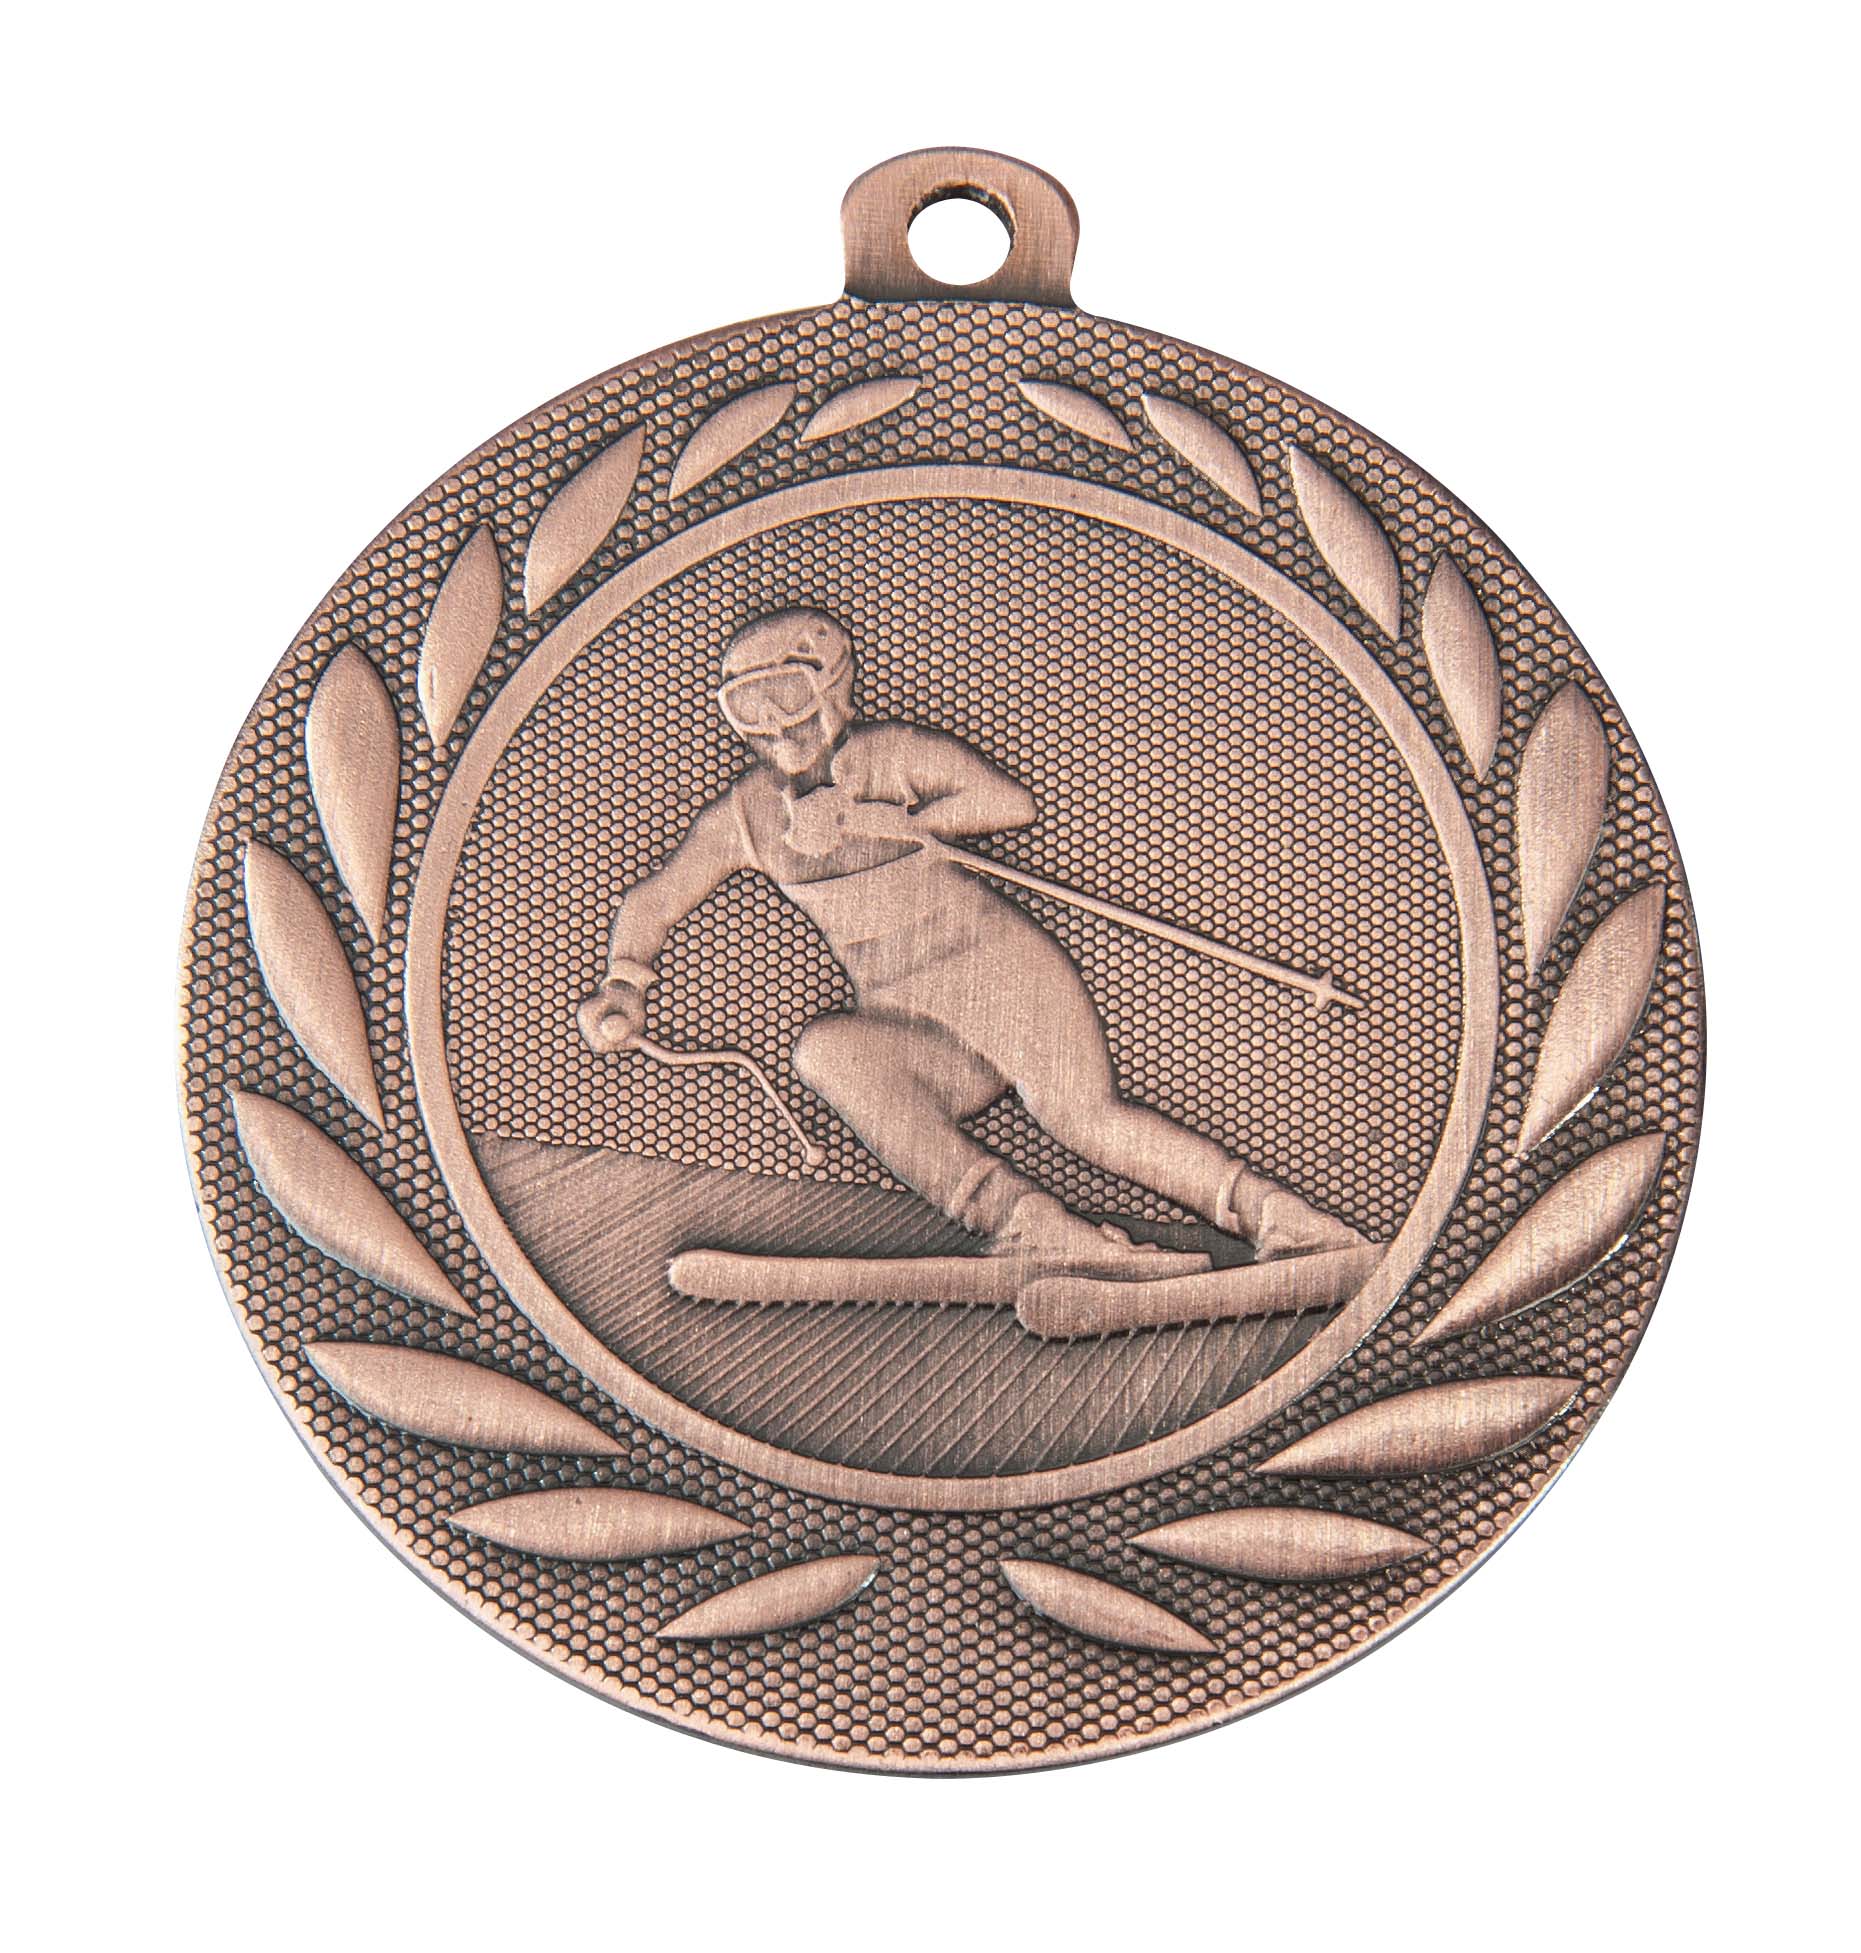 Ski-Medaille DI15000Q inkl. Band und Beschriftung Bronze Fertig montiert gegen Aufpreis